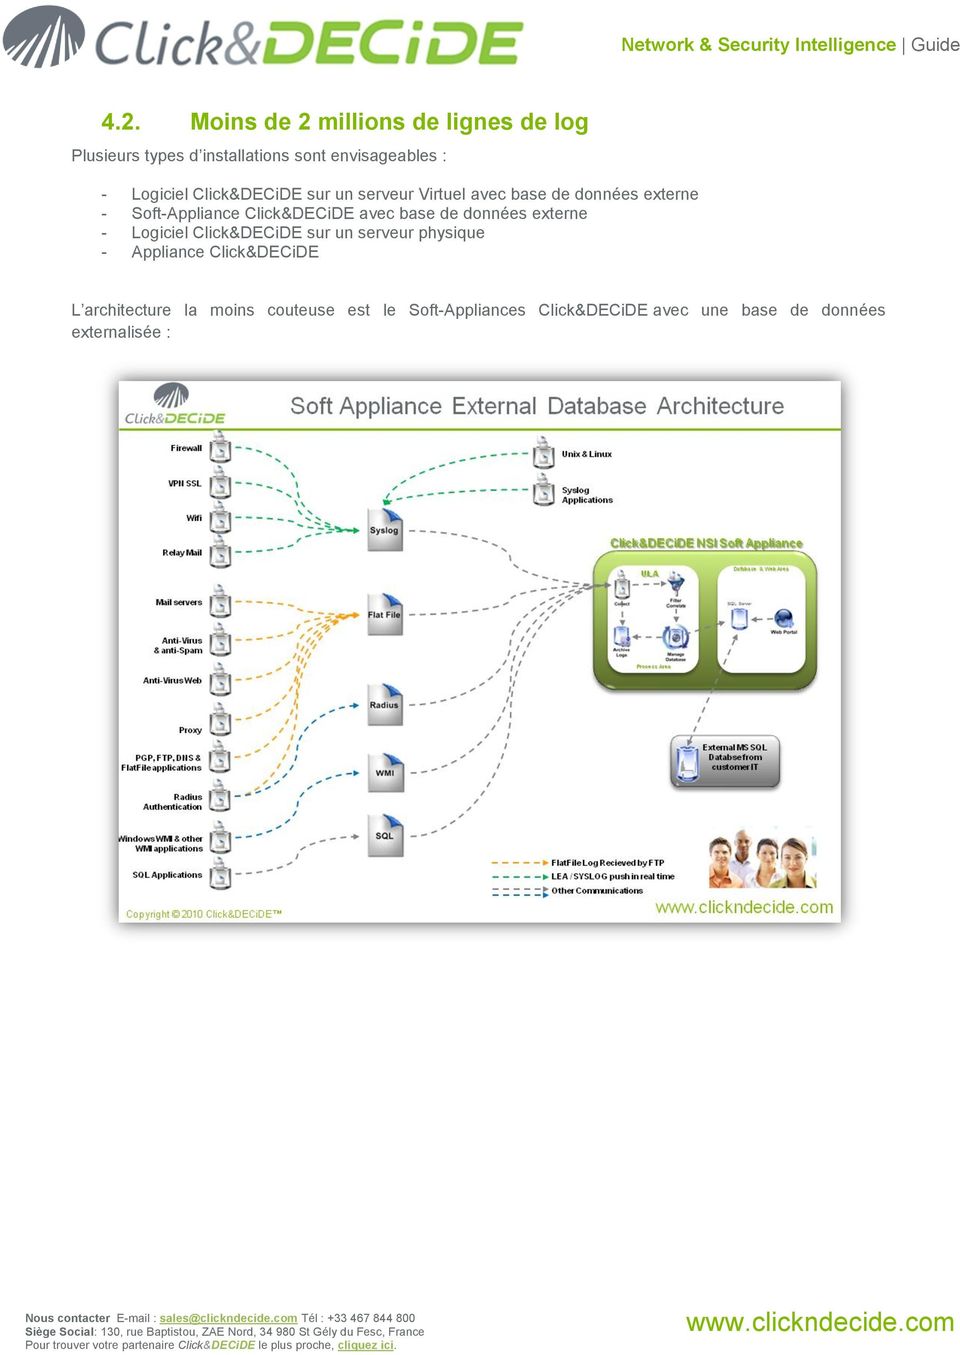 Click&DECiDE avec base de données externe - Logiciel Click&DECiDE sur un serveur physique - Appliance